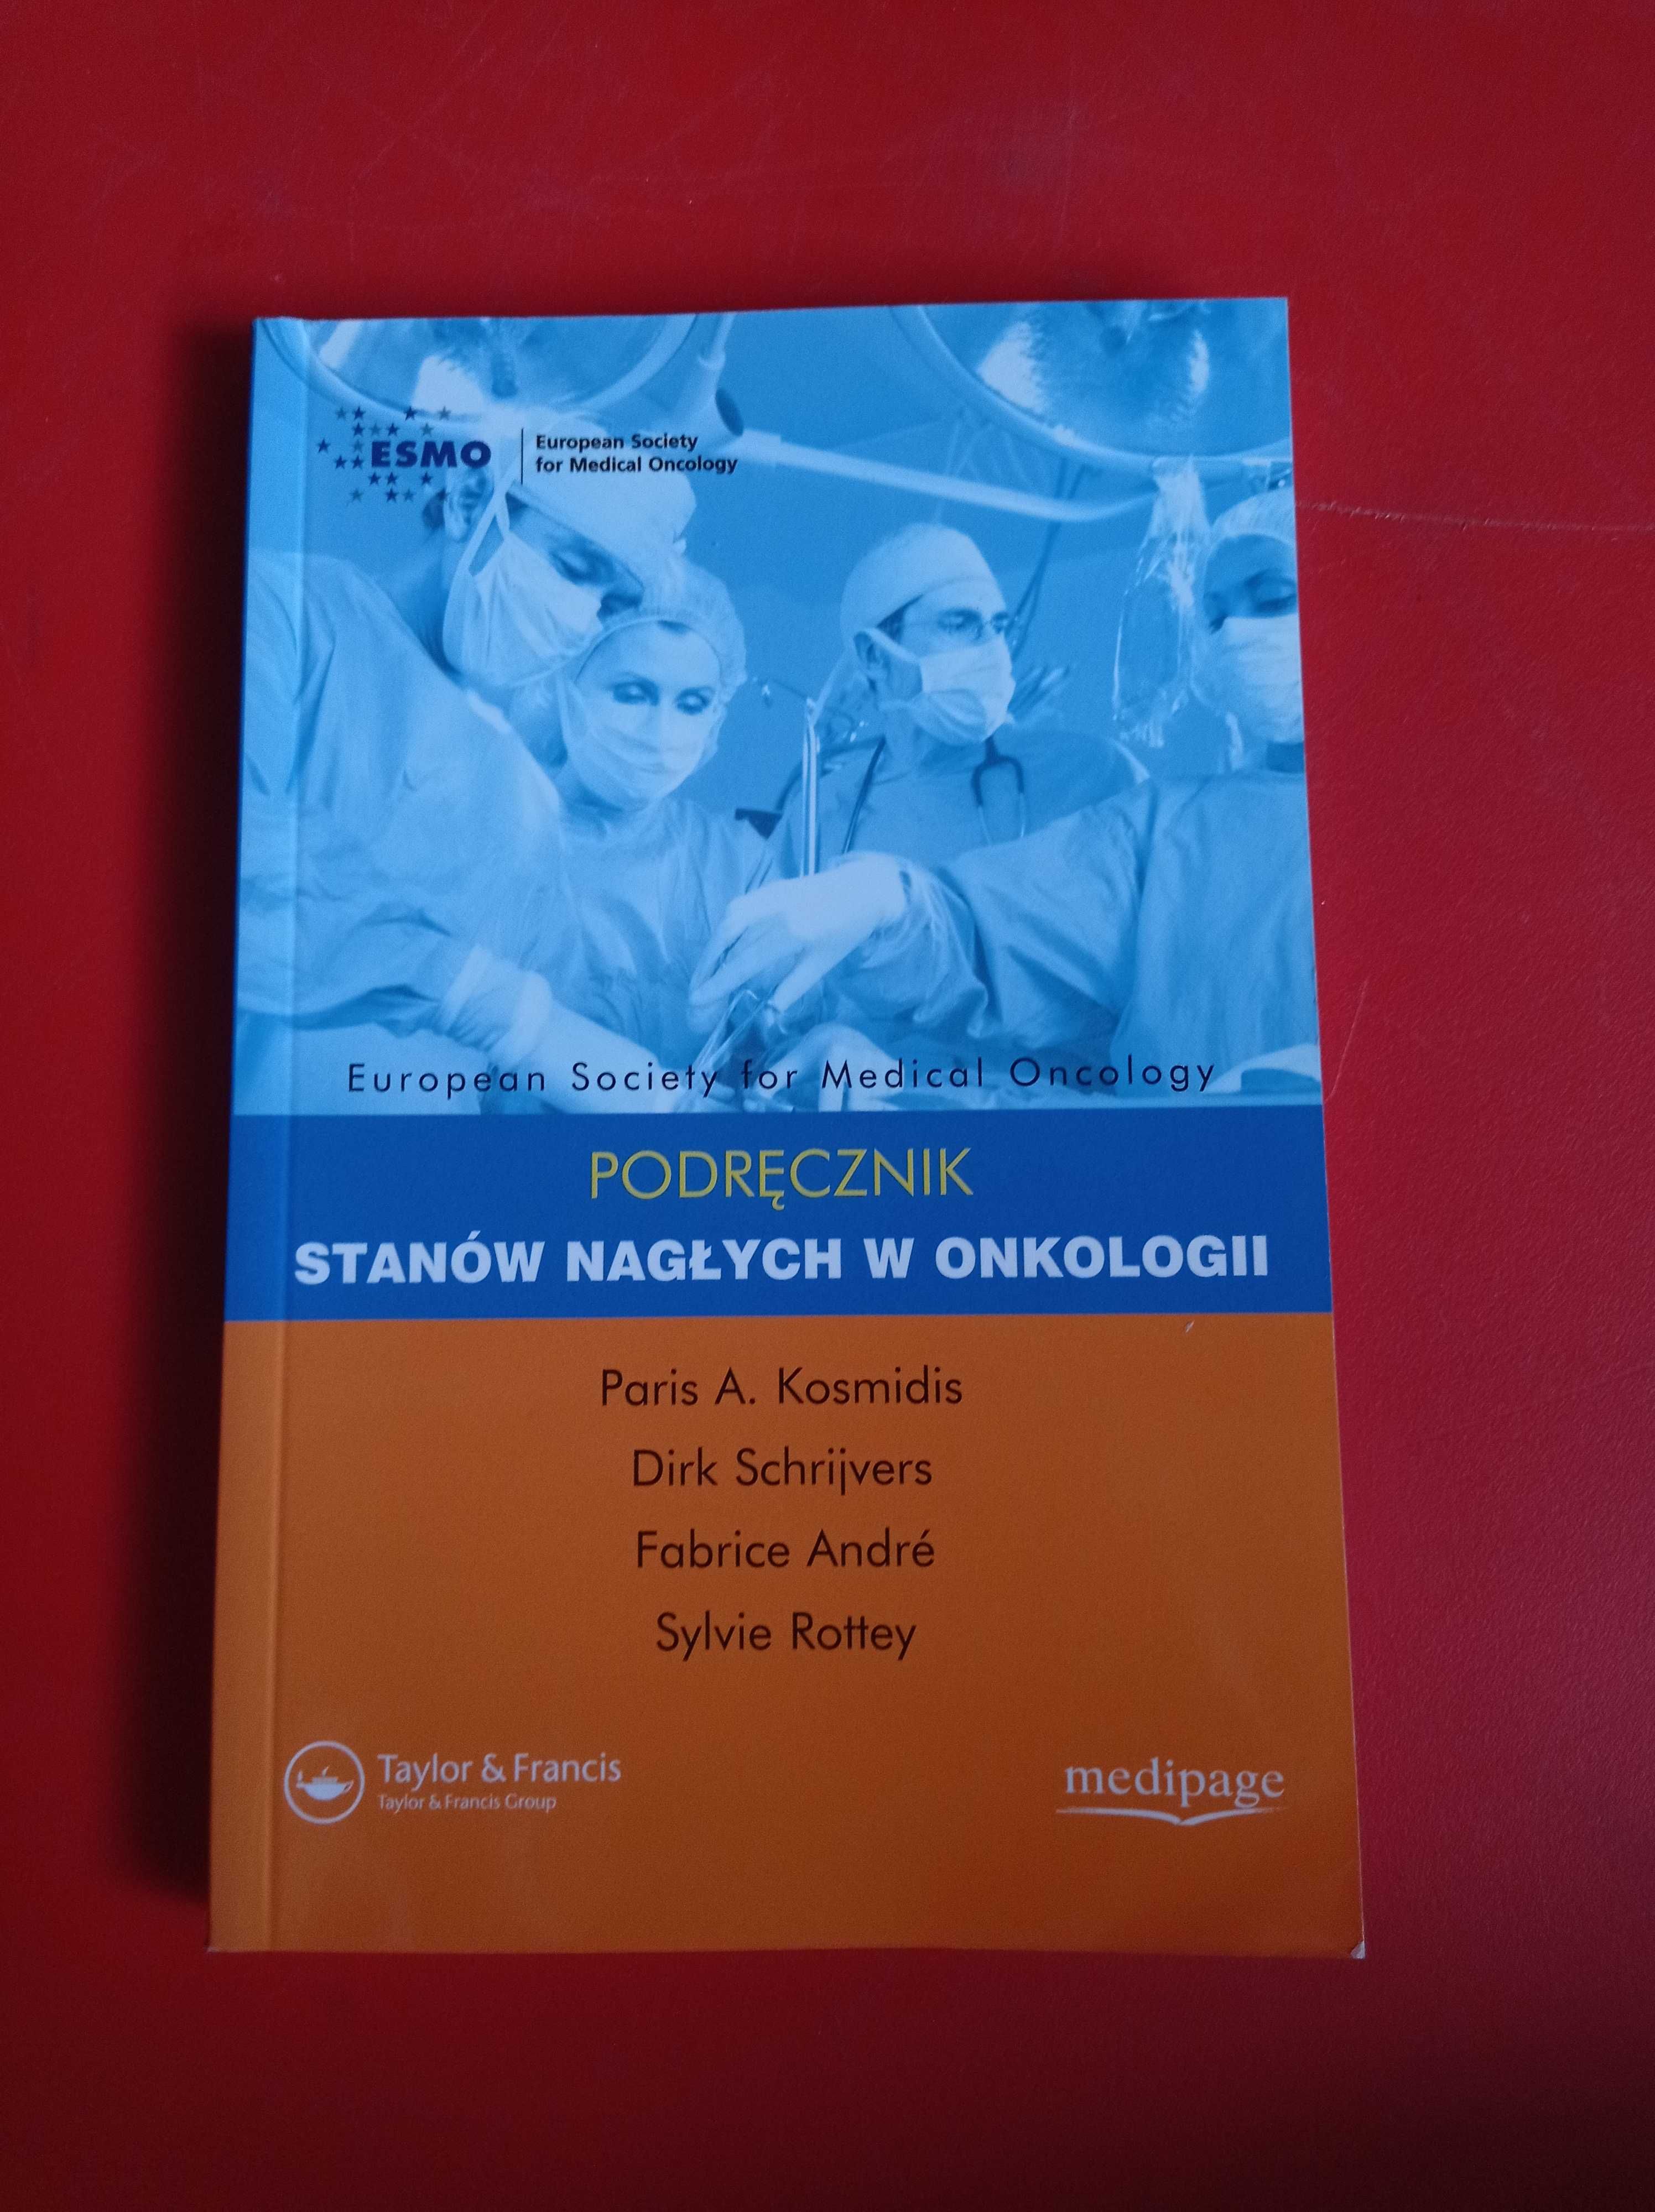 Podręcznik stanów nagłych w onkologii, Paris A. Kosmidis i inni